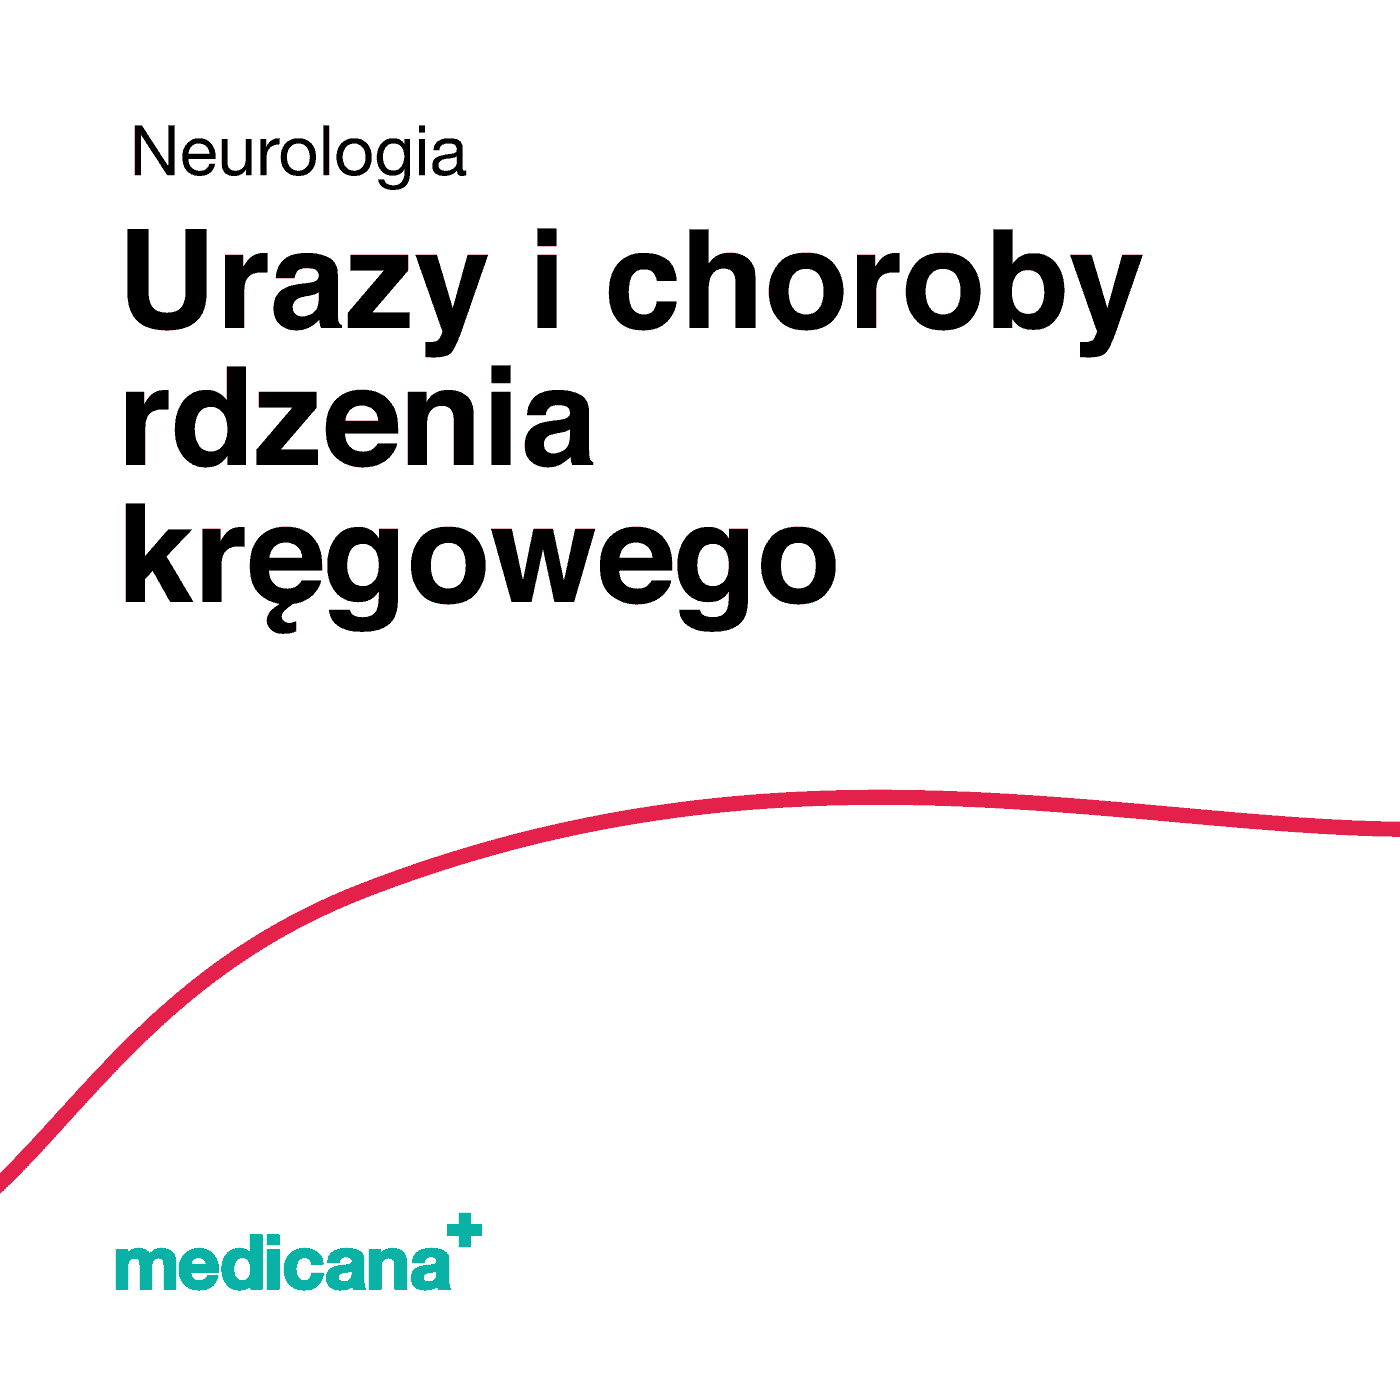 Grafika, białe tło z czerwoną kreską, czarnym napisem Neurologia - Urazy i choroby rdzenia kręgowego i logo Medicana Centrum Terapii Medyczna Marihuana w lewym dolnym rogu.